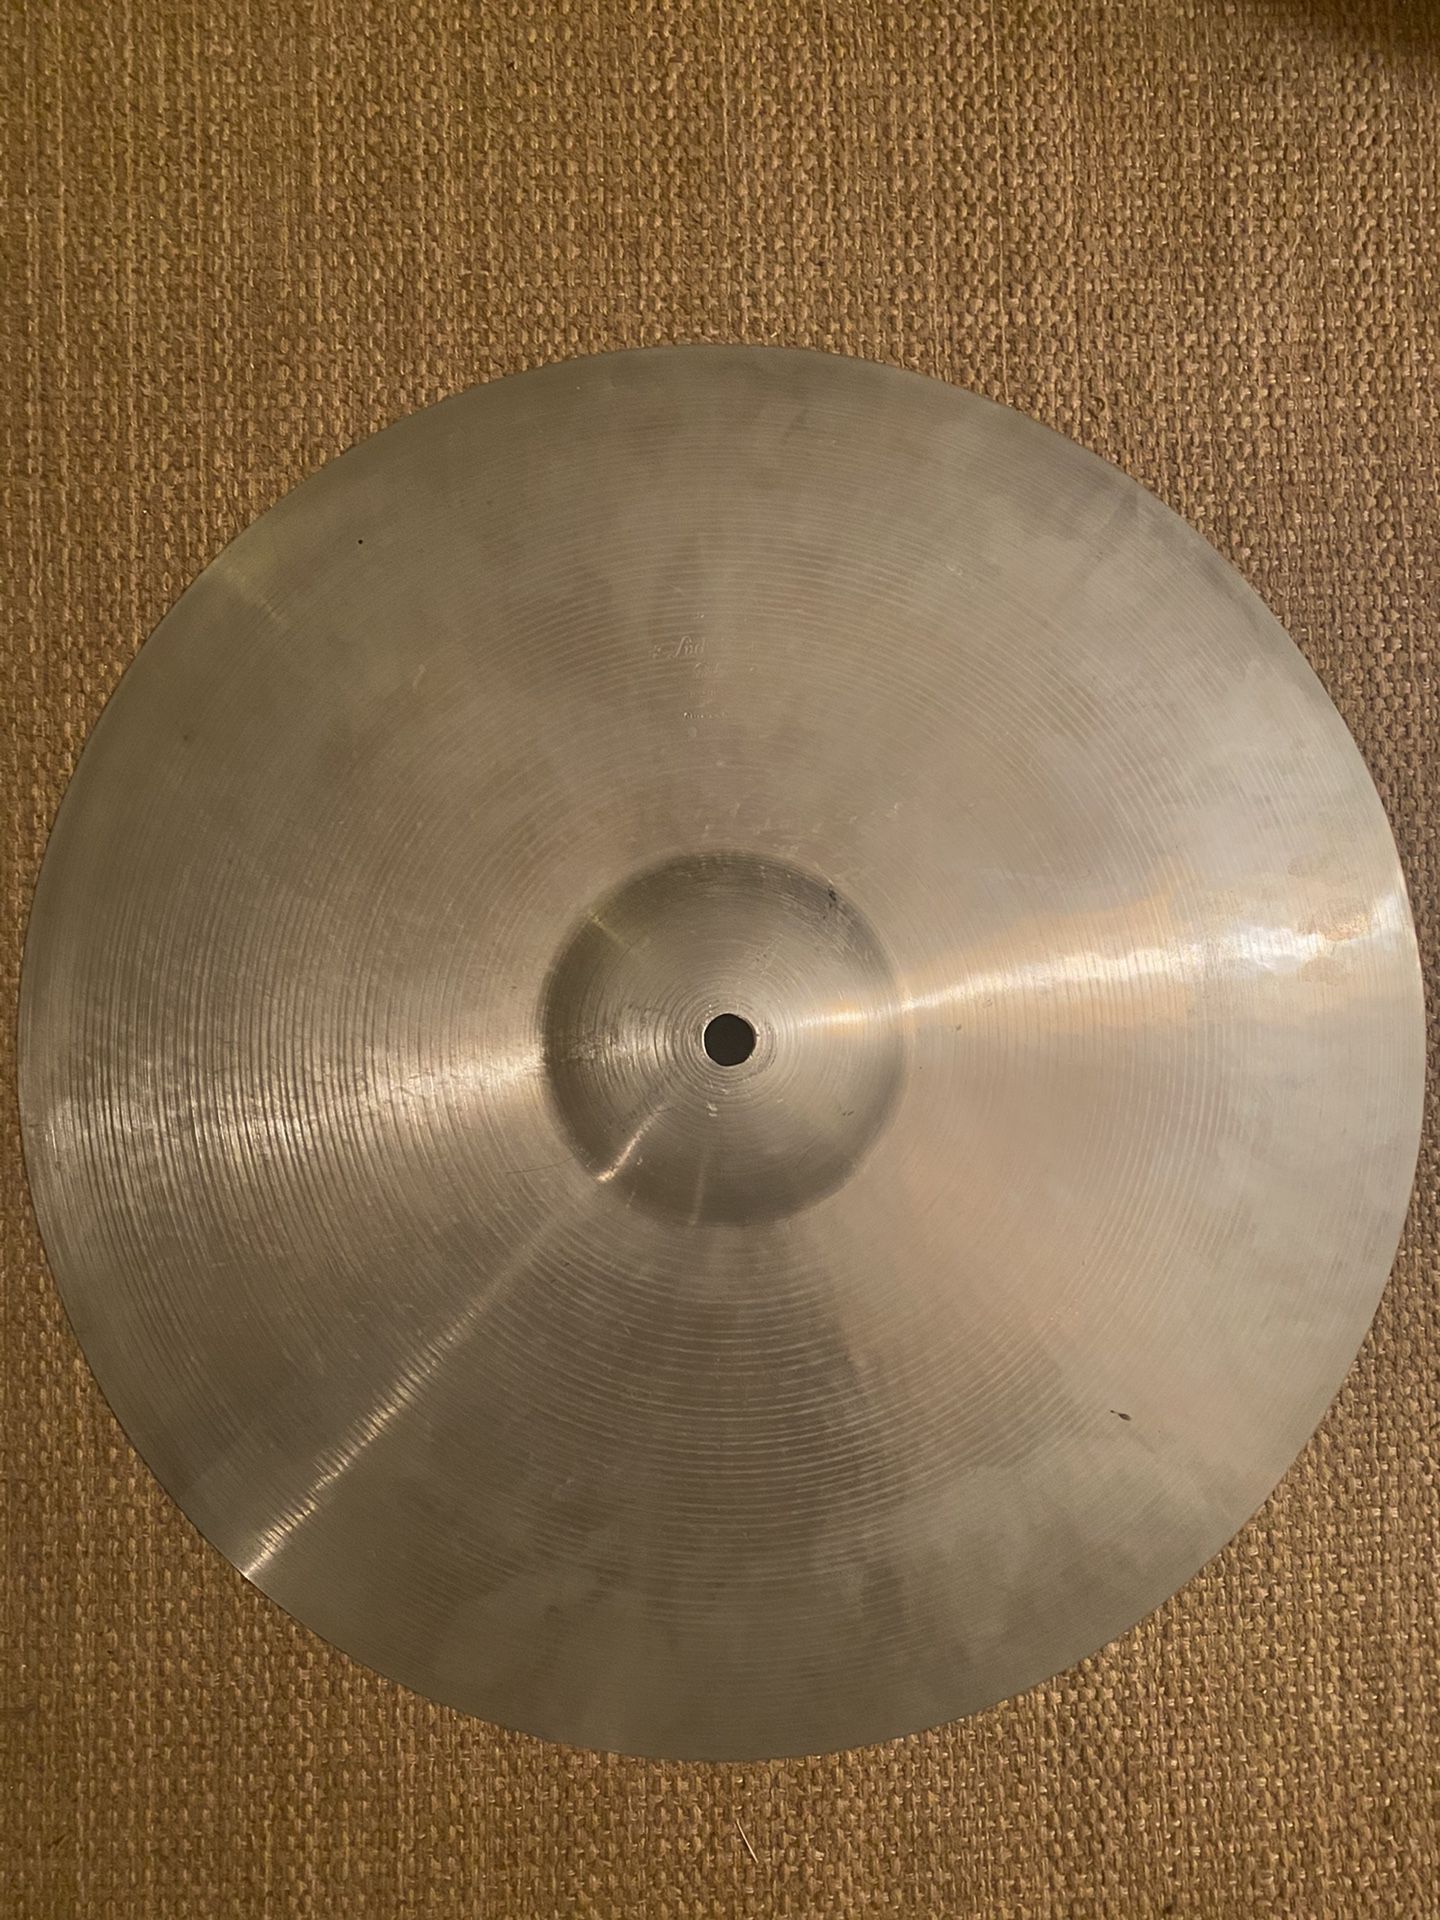 Vintage Ludwig 20” Ride Cymbal